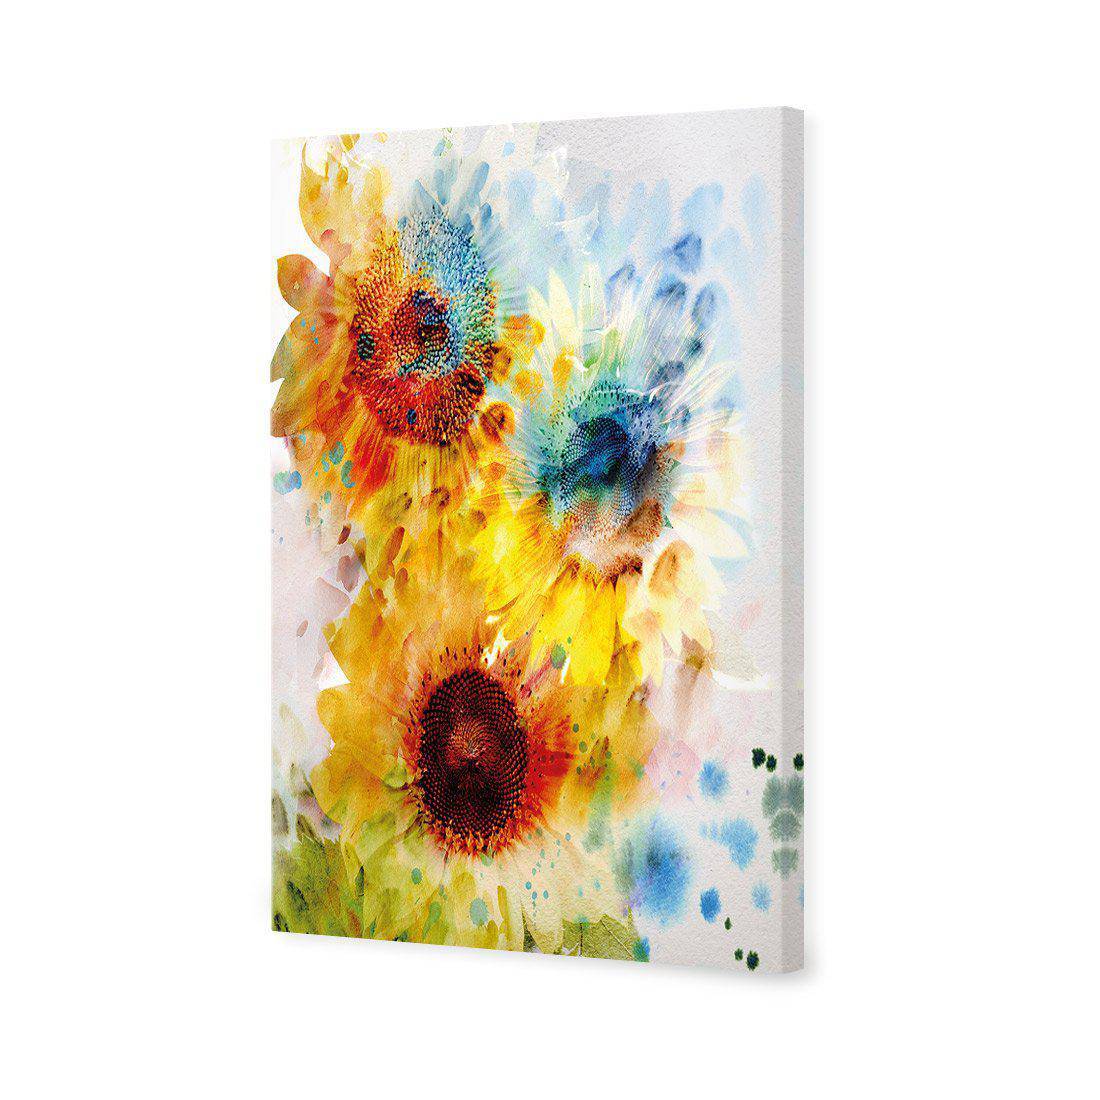 A Blur Of Flowers Canvas Art-Canvas-Wall Art Designs-45x30cm-Canvas - No Frame-Wall Art Designs